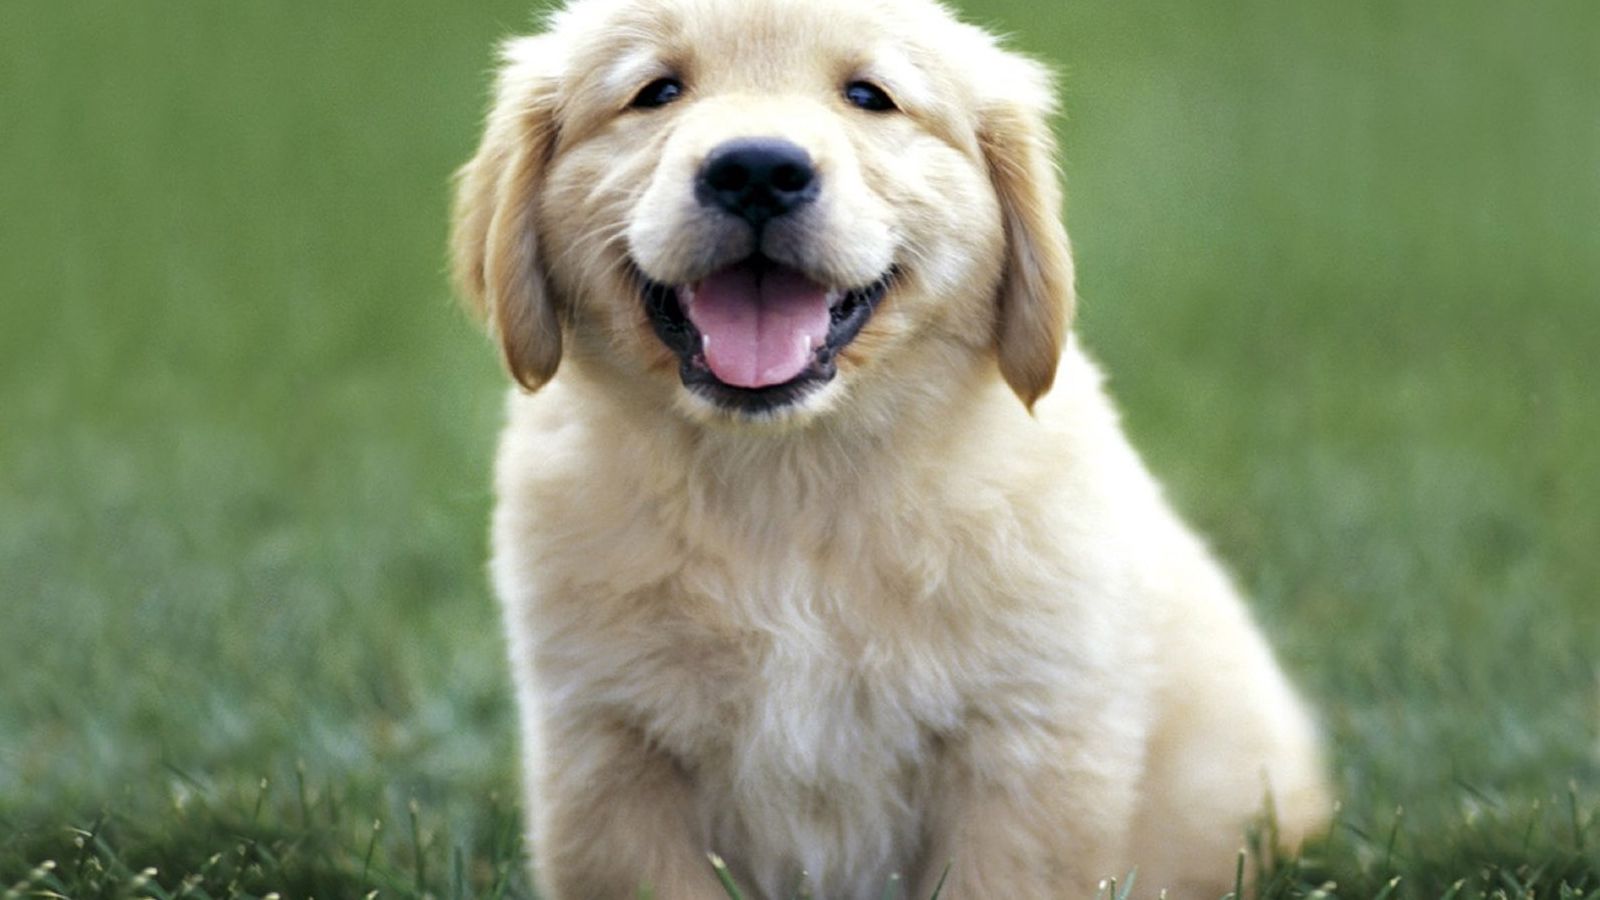 Free download Cute Golden Retriever Puppies Wallpaper High